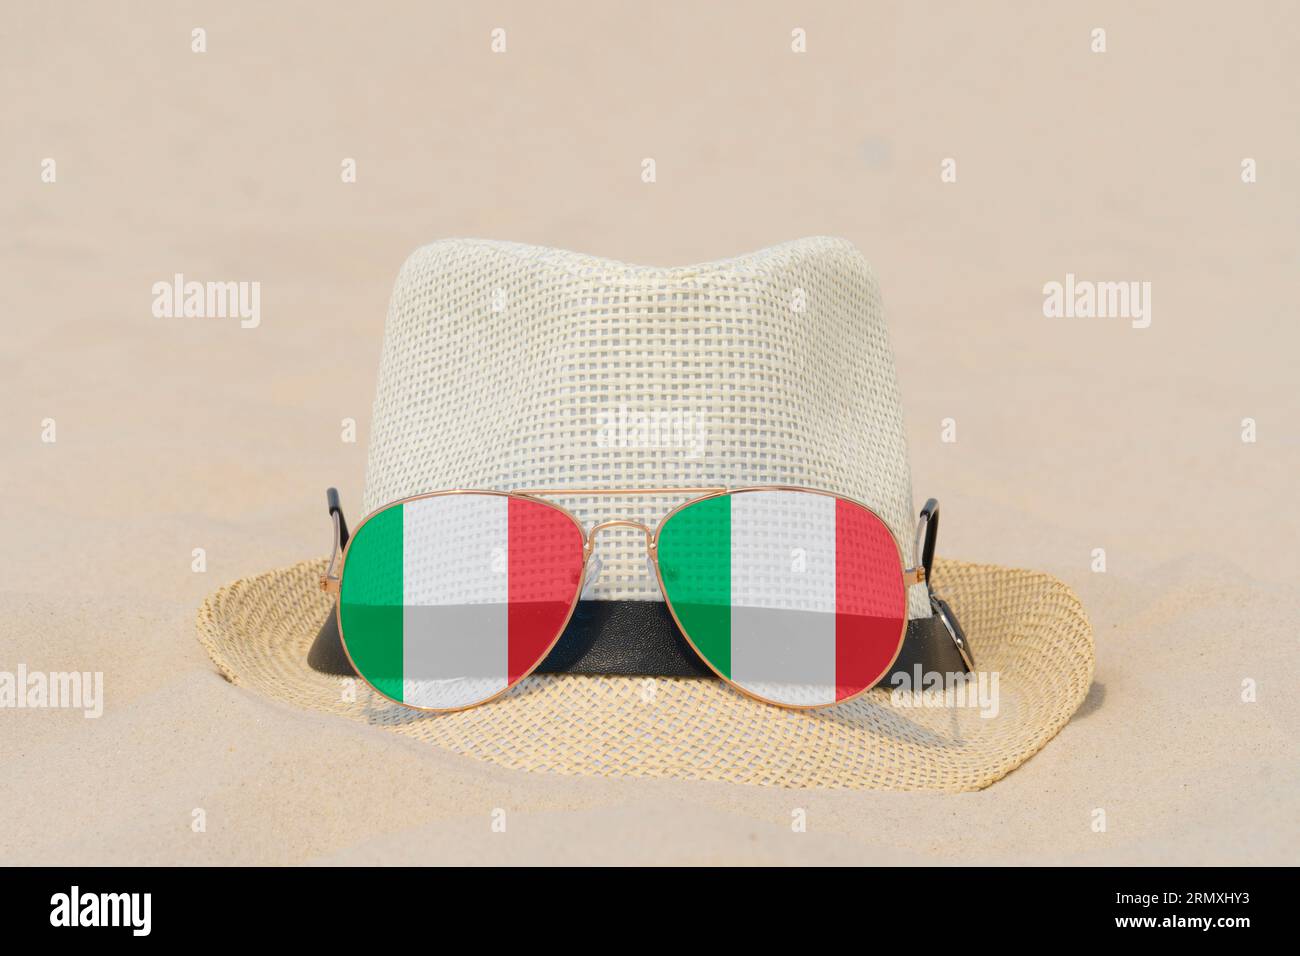 Sonnenbrille mit Gläsern in Form einer italienischen Flagge und einem Hut liegen auf Sand. Konzept der Sommerferien und Reisen in Italien. Sommerruhe. Weihnachtszeit Stockfoto